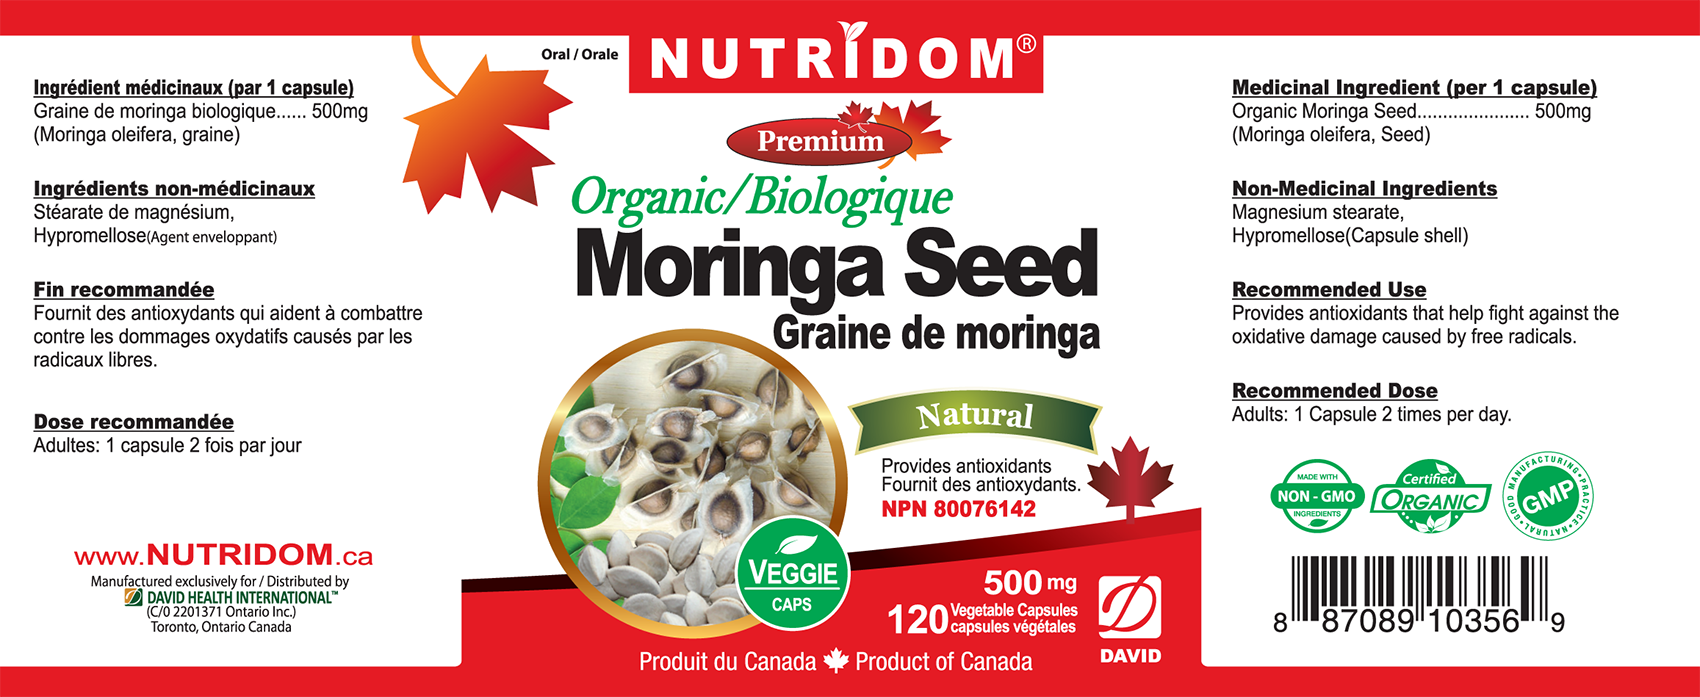 NUTRIDOM Moringa seed